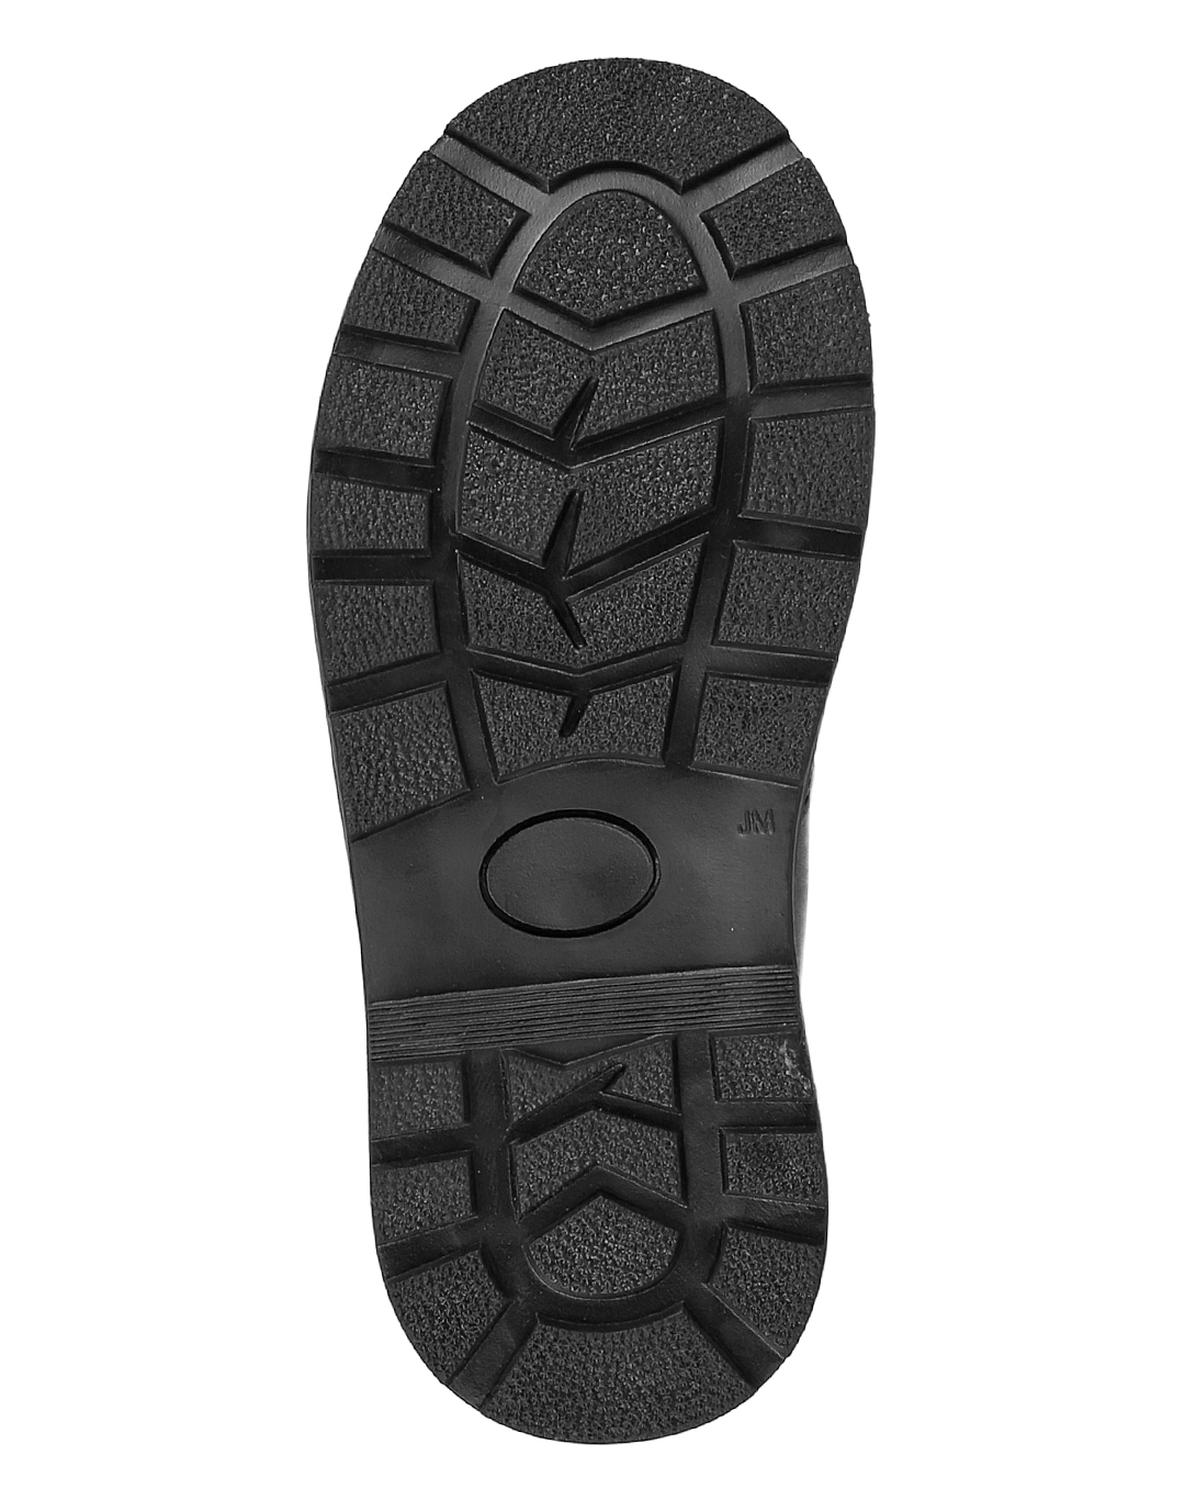 Zapato Escolar Piso Niño Negro Tacto Piel Stfashion 16803804